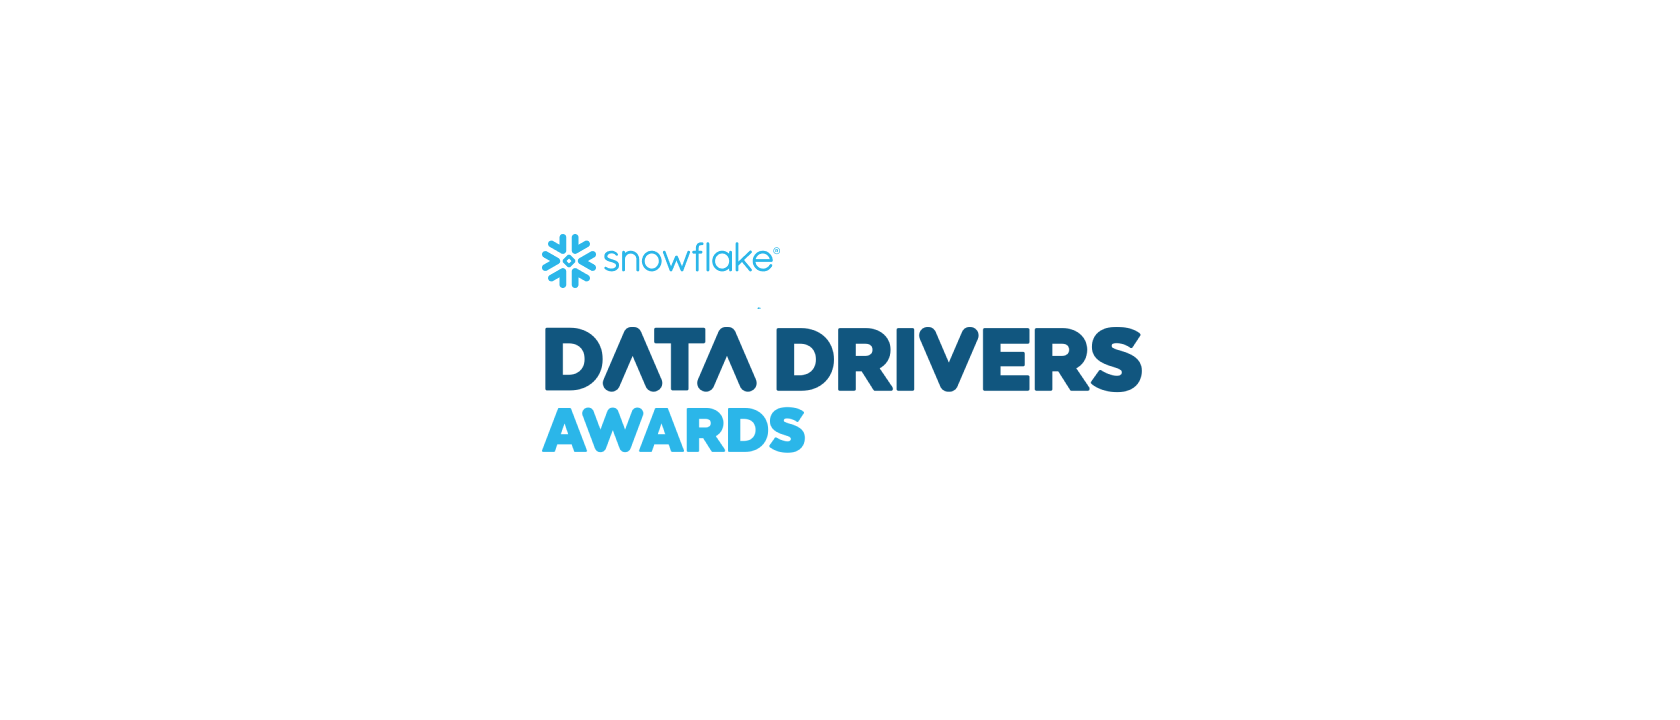 L’innovation et l’excellence à l’honneur : l’annonce des Data Drivers de Snowflake